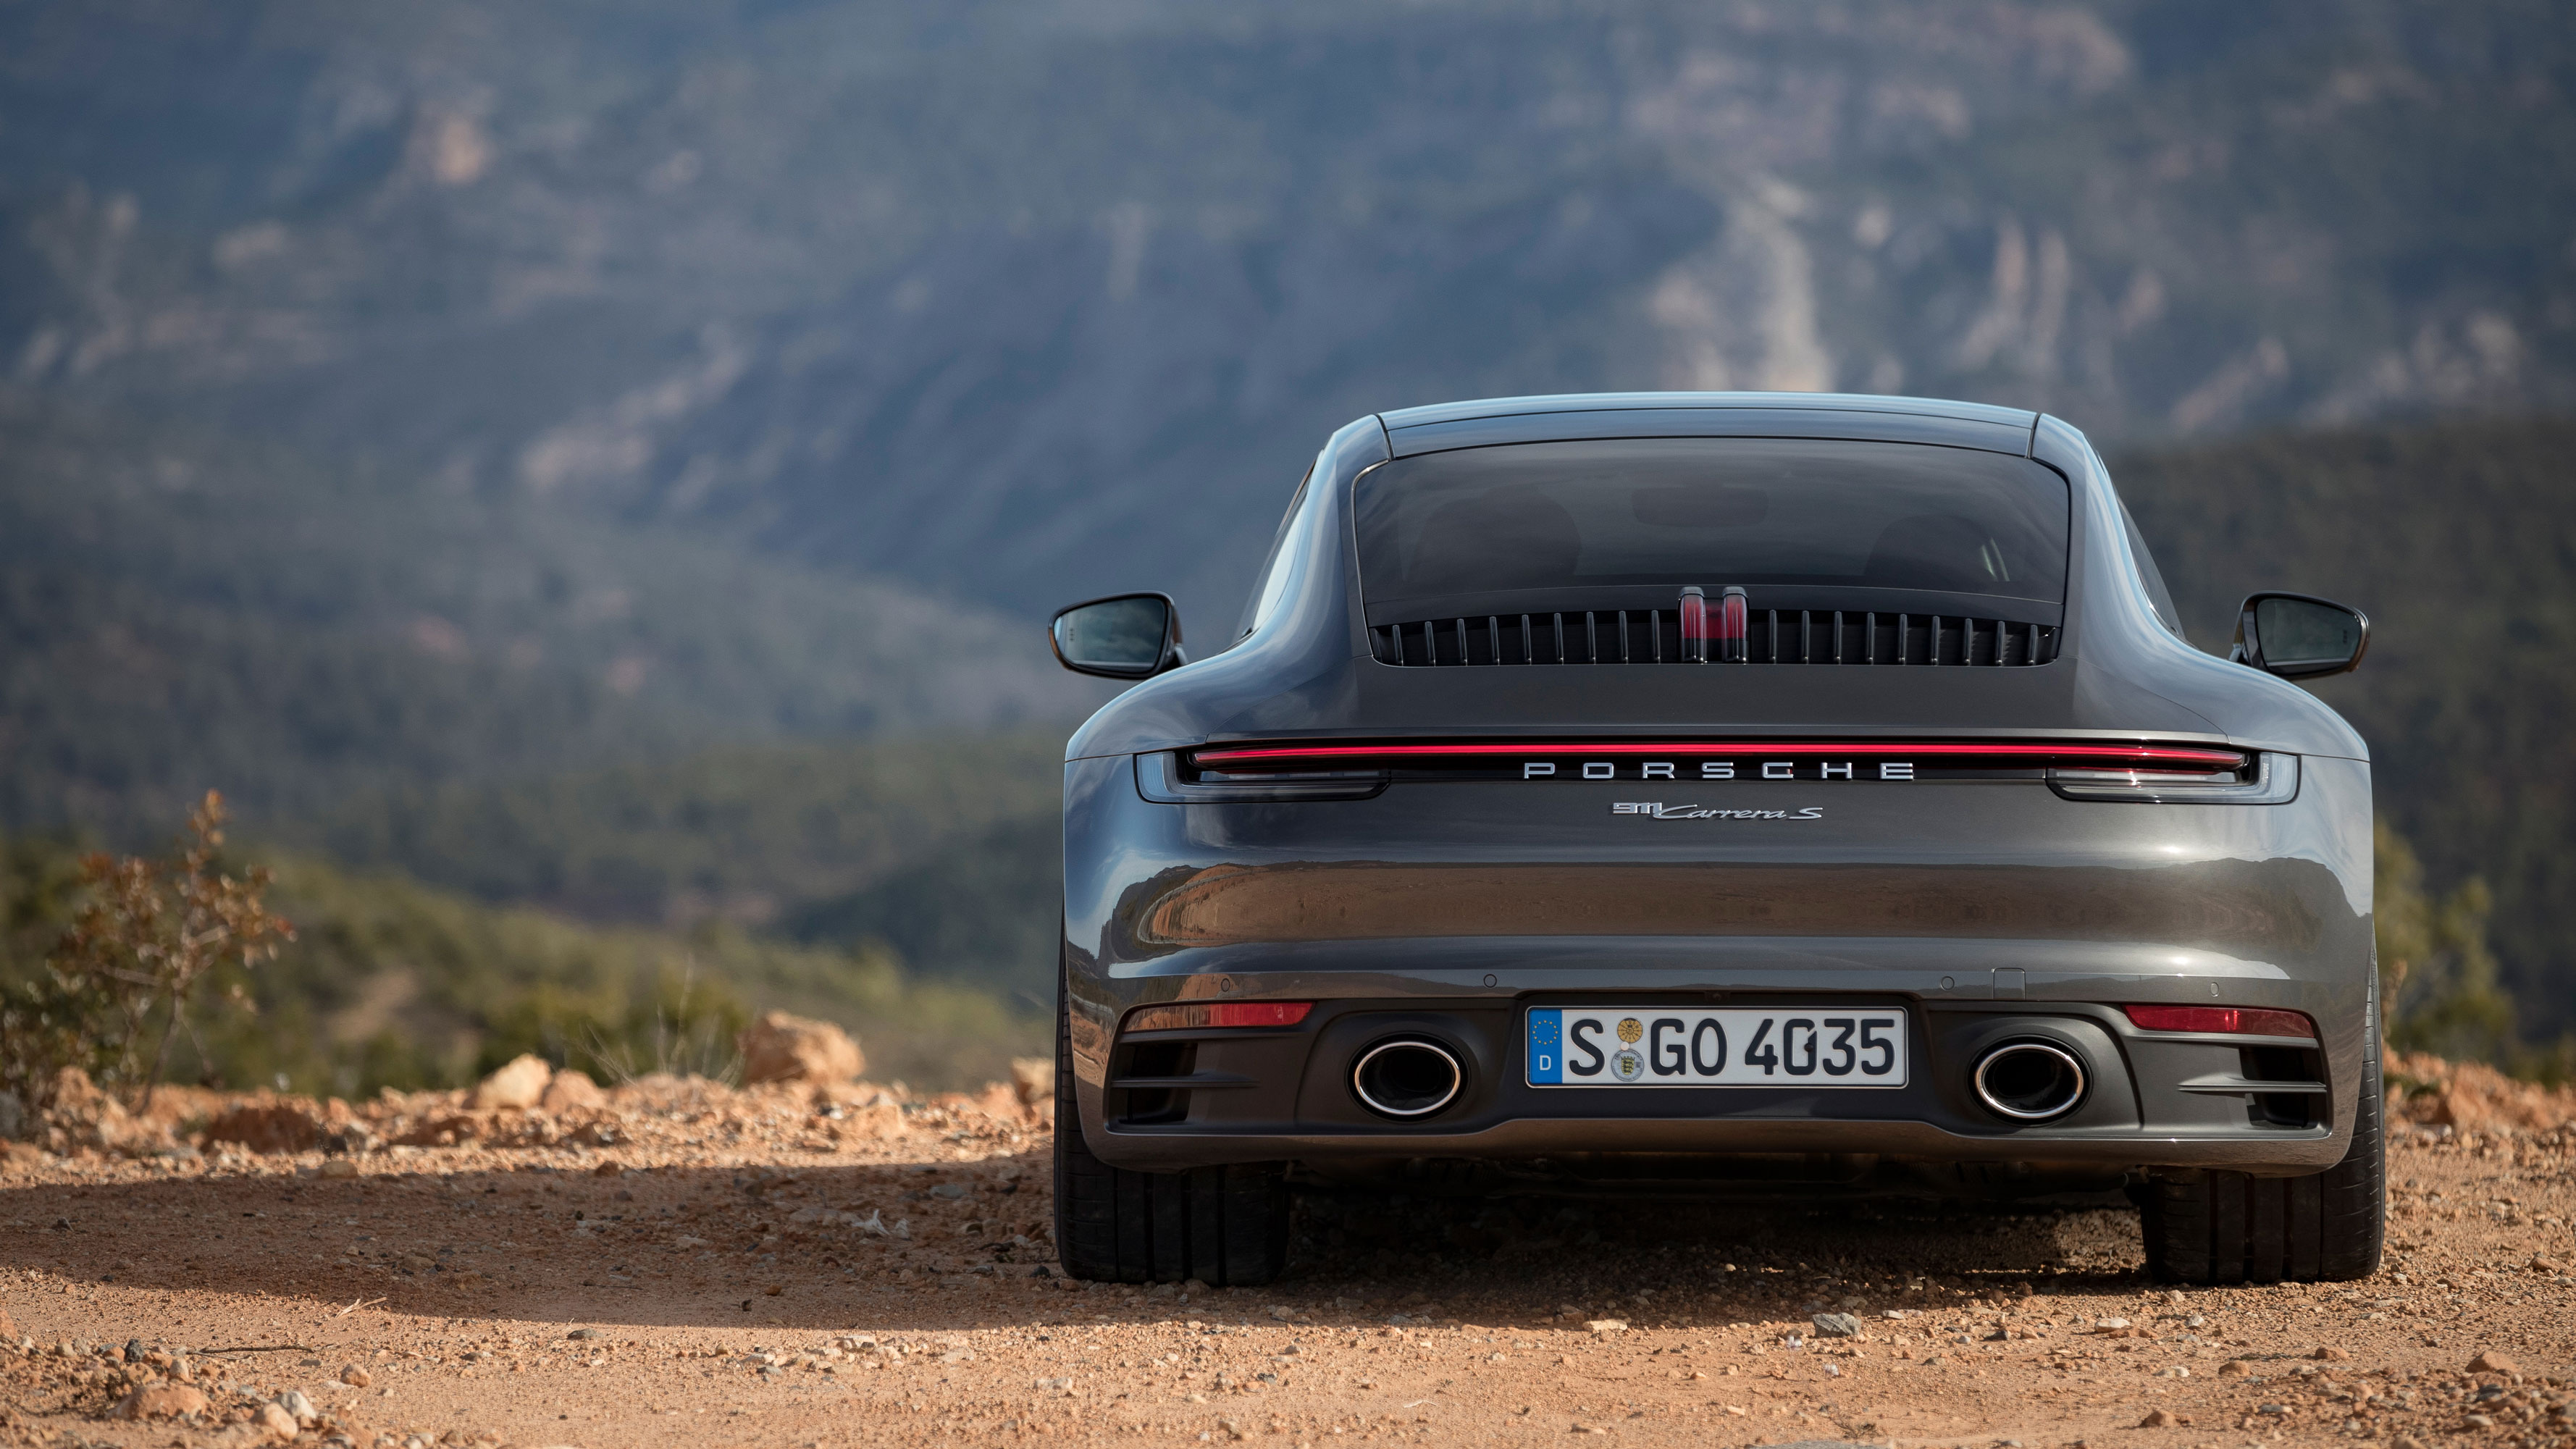 Porsche 911 Cars For Sale | AutoTrader UK